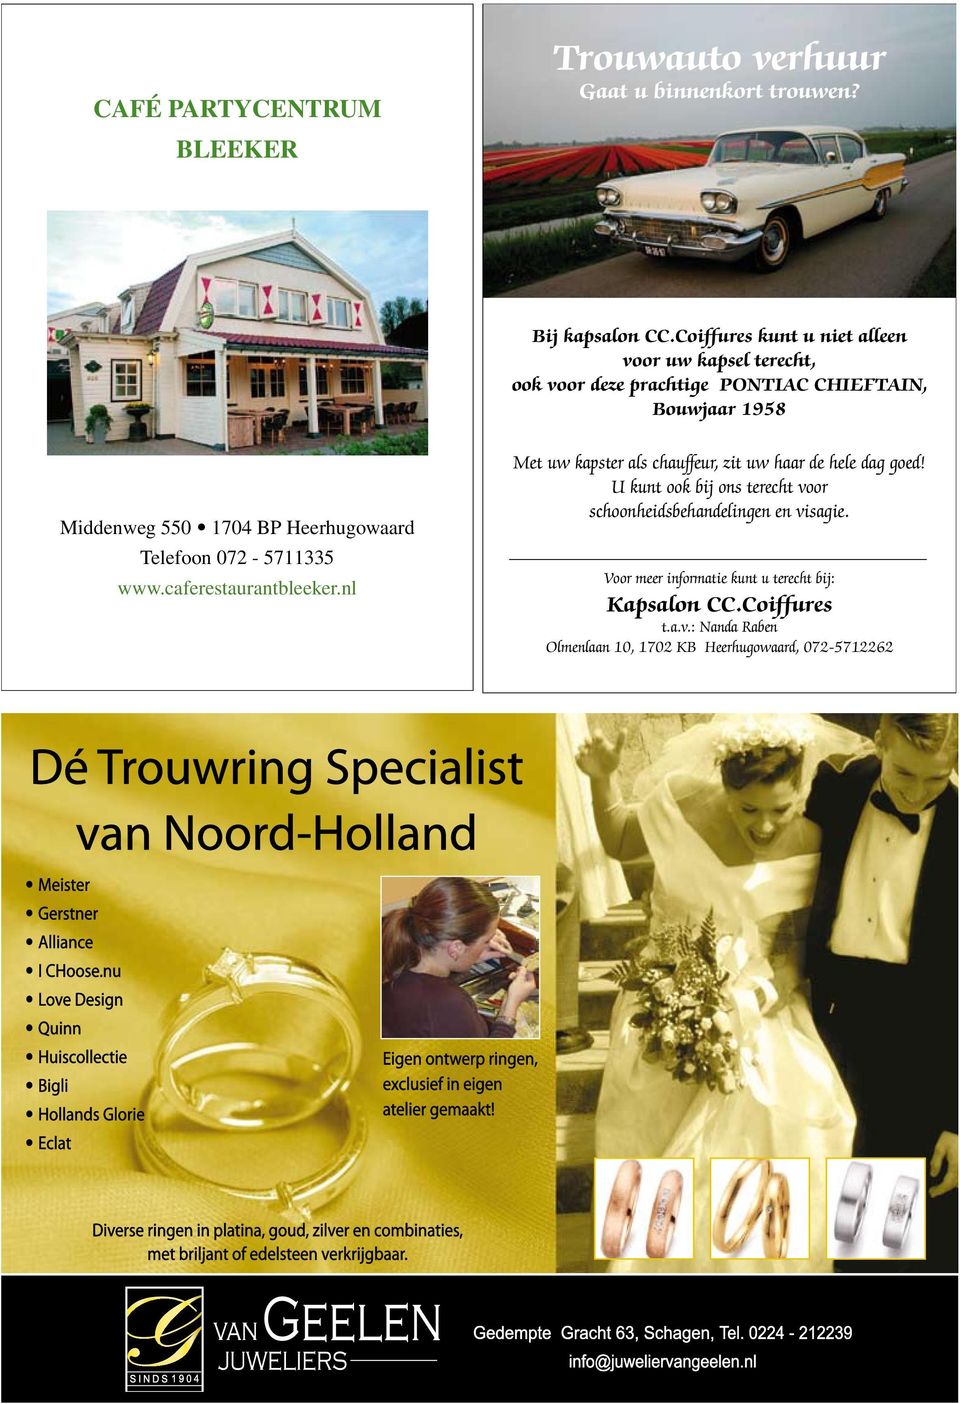 Heerhugowaard Telefoon 072-5711335 www.caferestaurantbleeker.nl Met uw kapster als chauffeur, zit uw haar de hele dag goed!